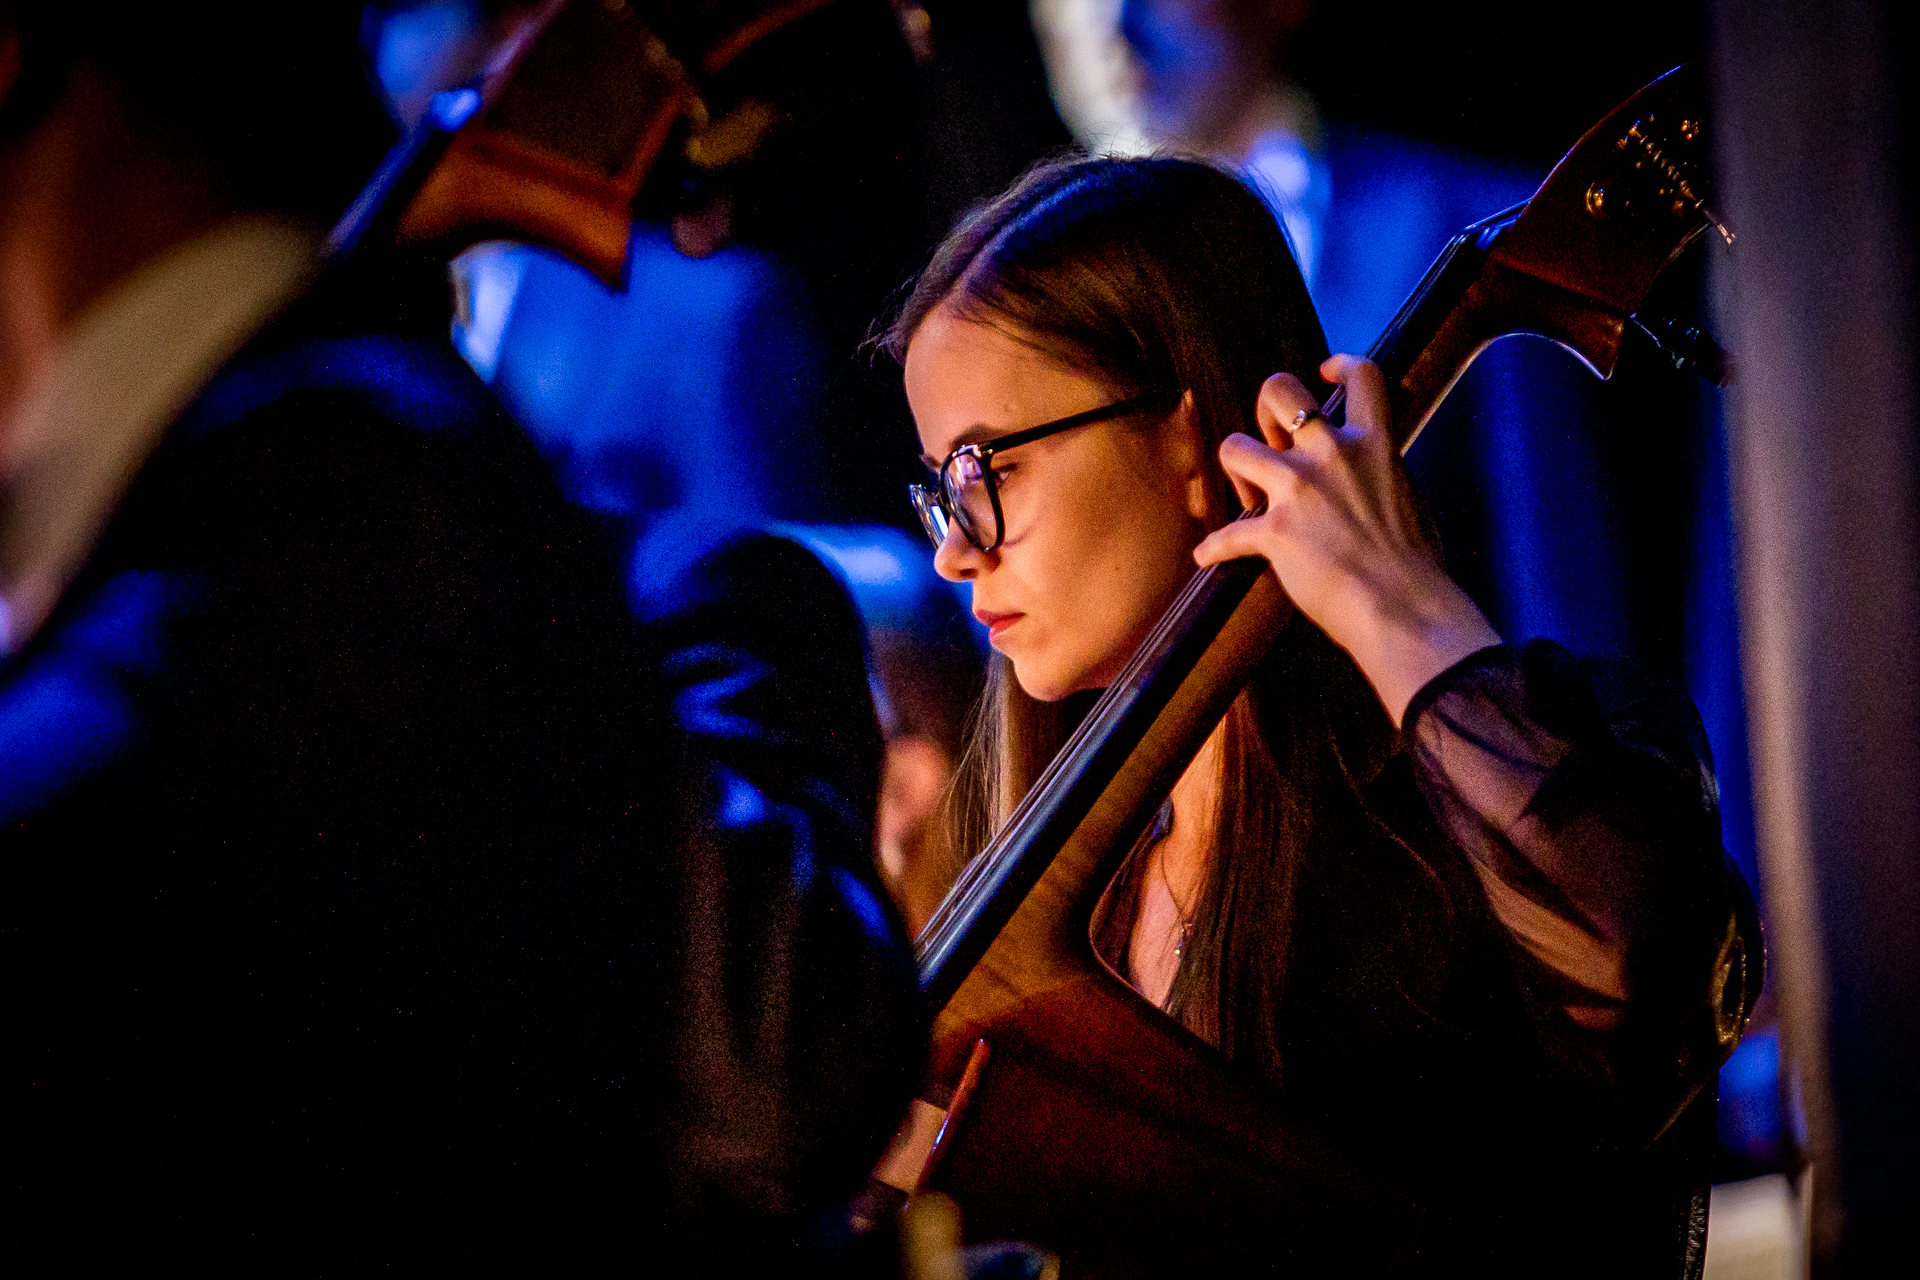 Zdjęcie. Wiolonczelistka o długich prostych włosach i okularach w ciemnych oprawkach gra na instrumencie.